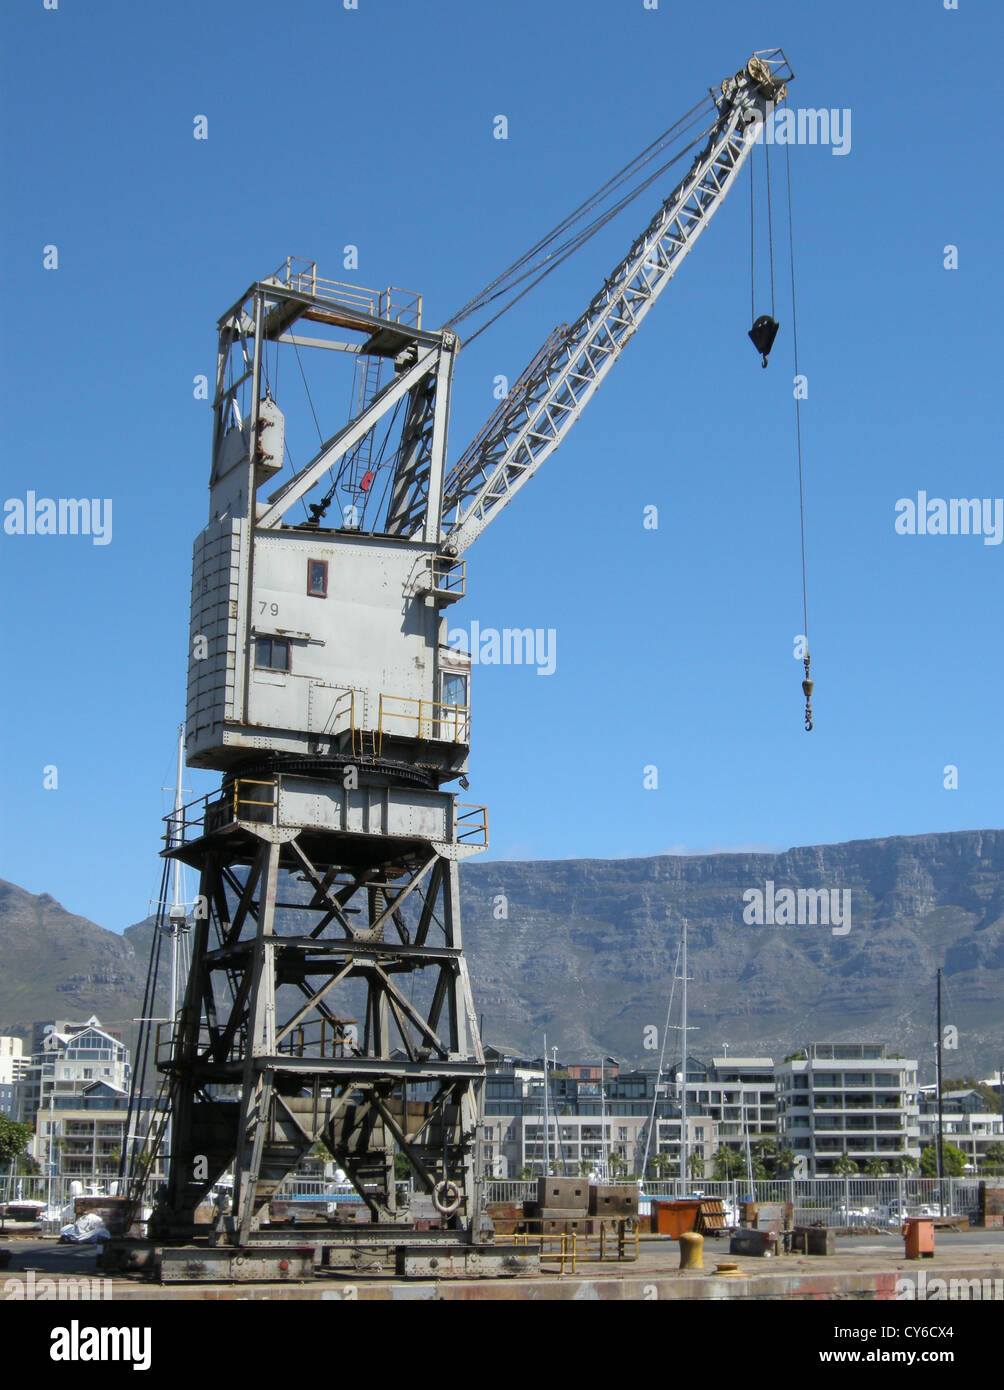 Ancienne grue dans le port de V&A Waterfront à Cape Town, avec table mountain en arrière-plan, Le Cap, Afrique du Sud. Banque D'Images